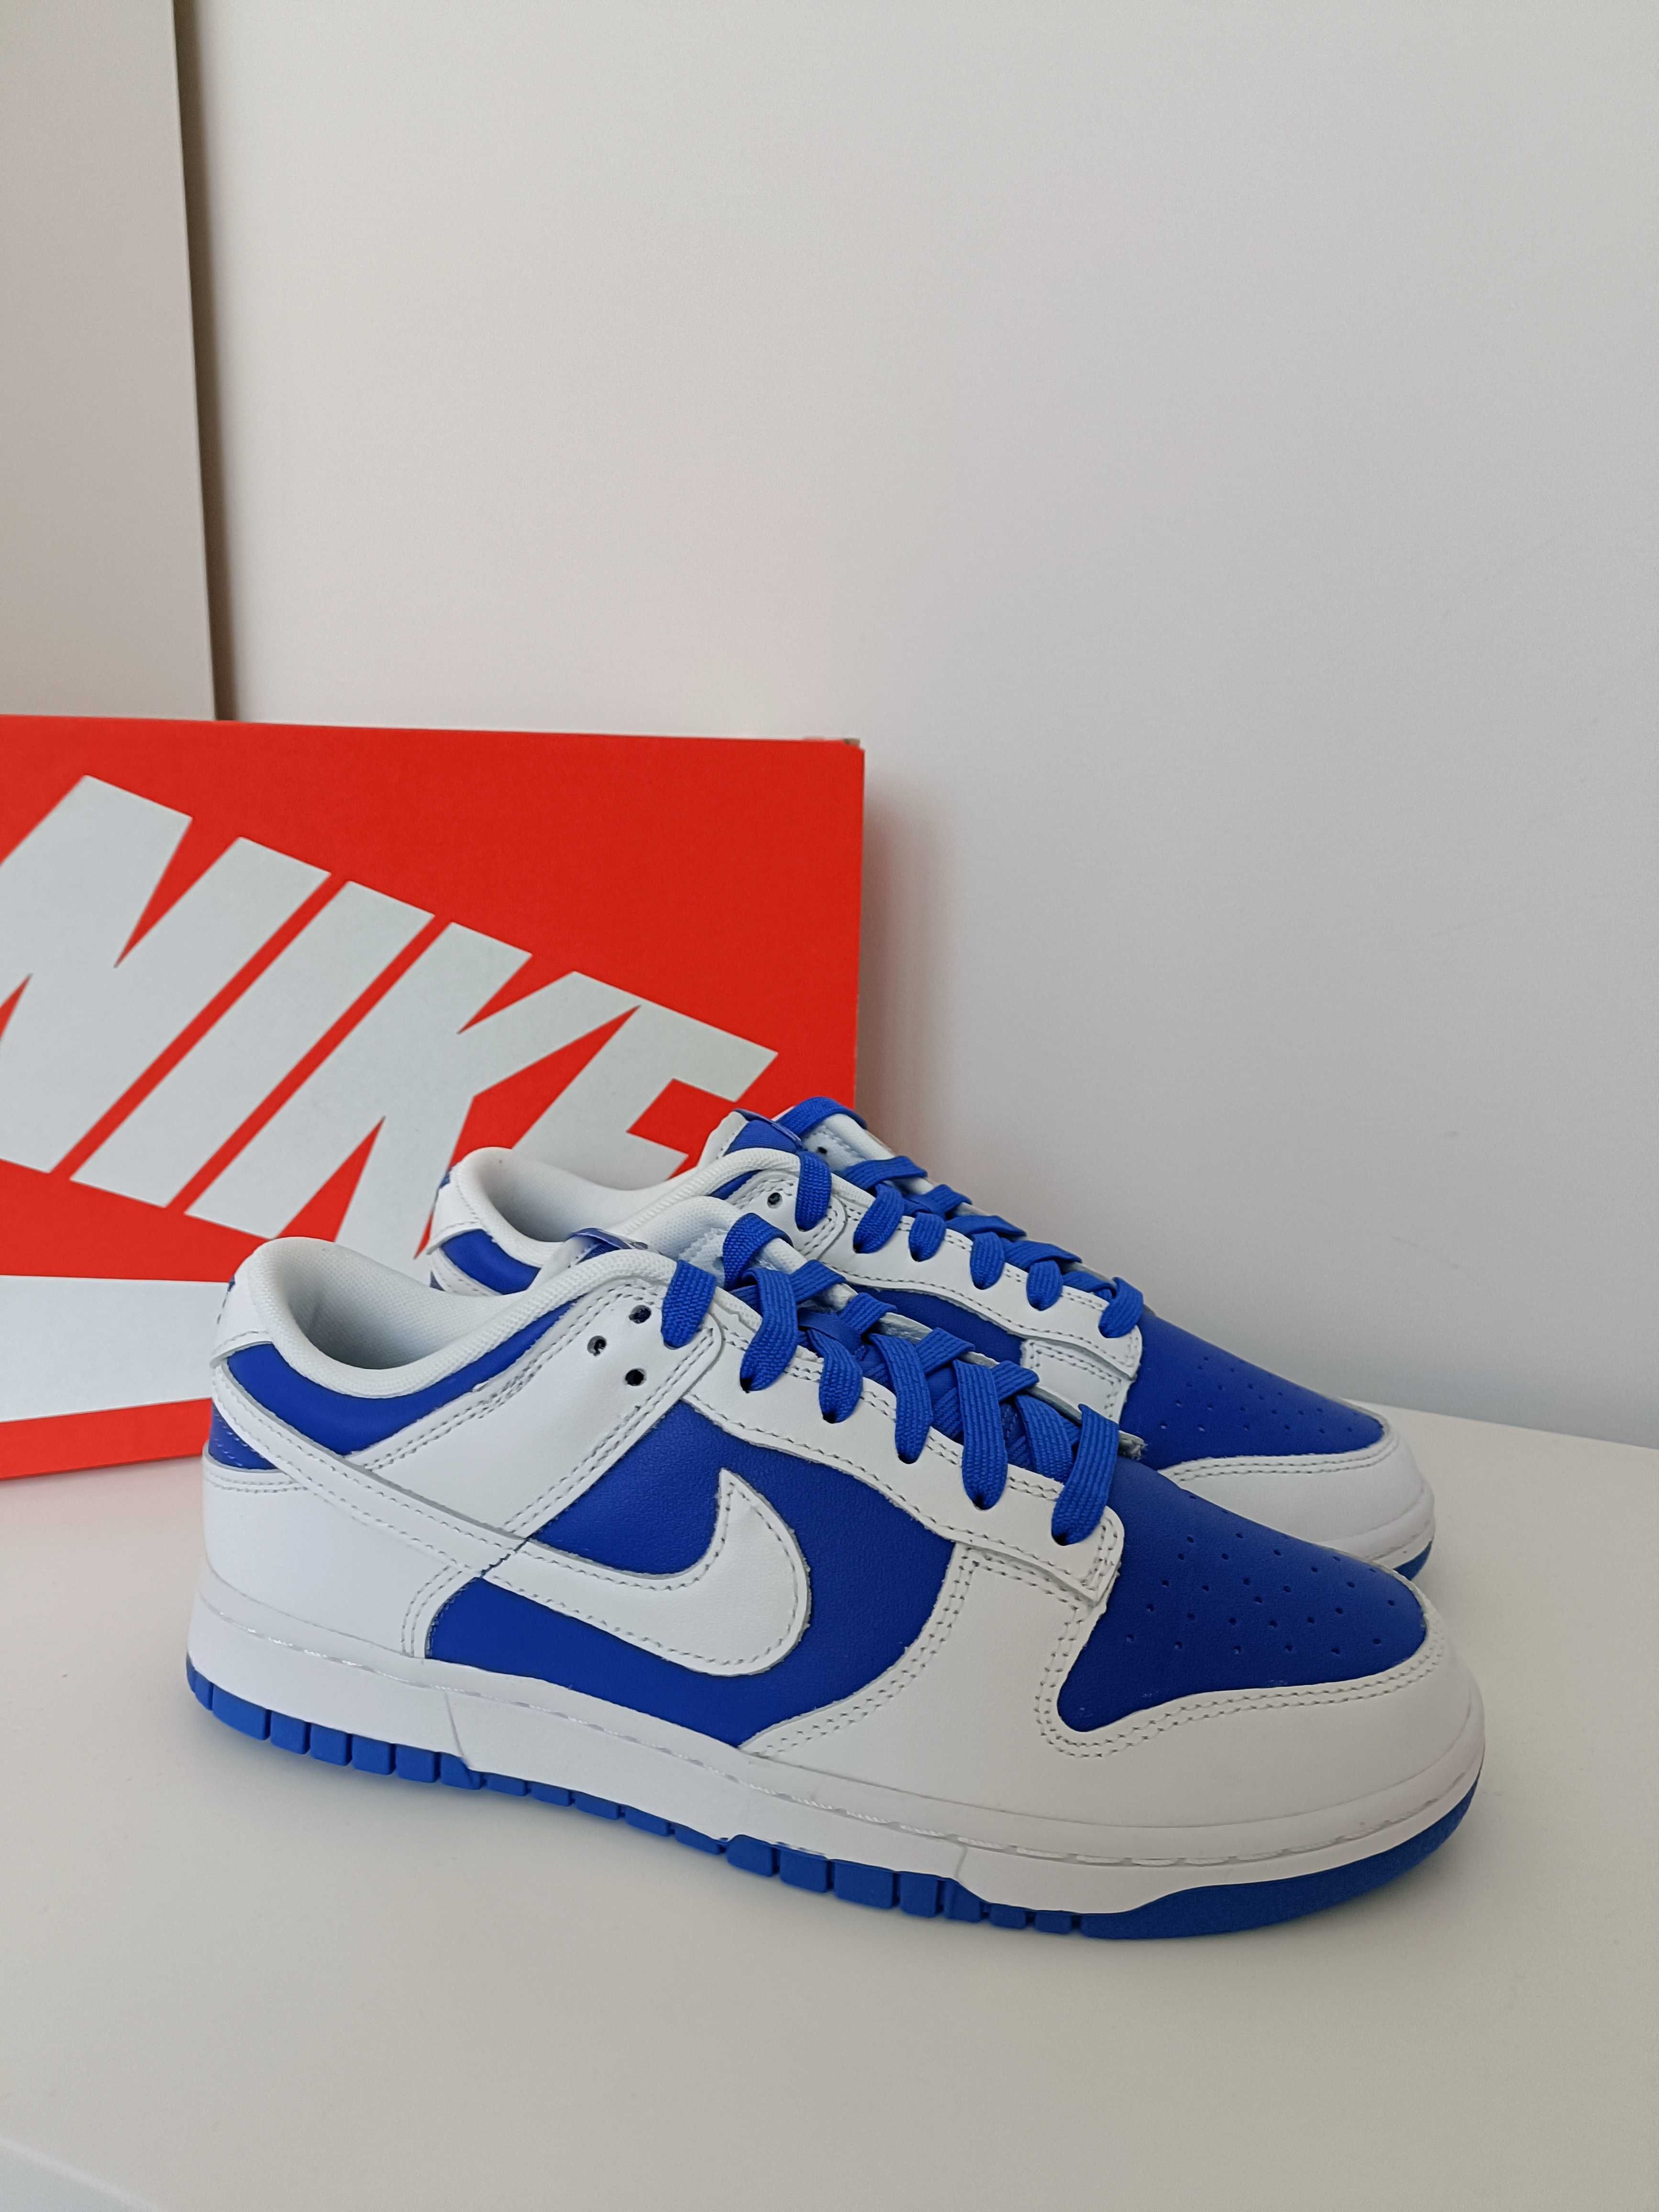 Nike Dunk Low Racer Blue White rozmiar 40 wkładka 25 cm